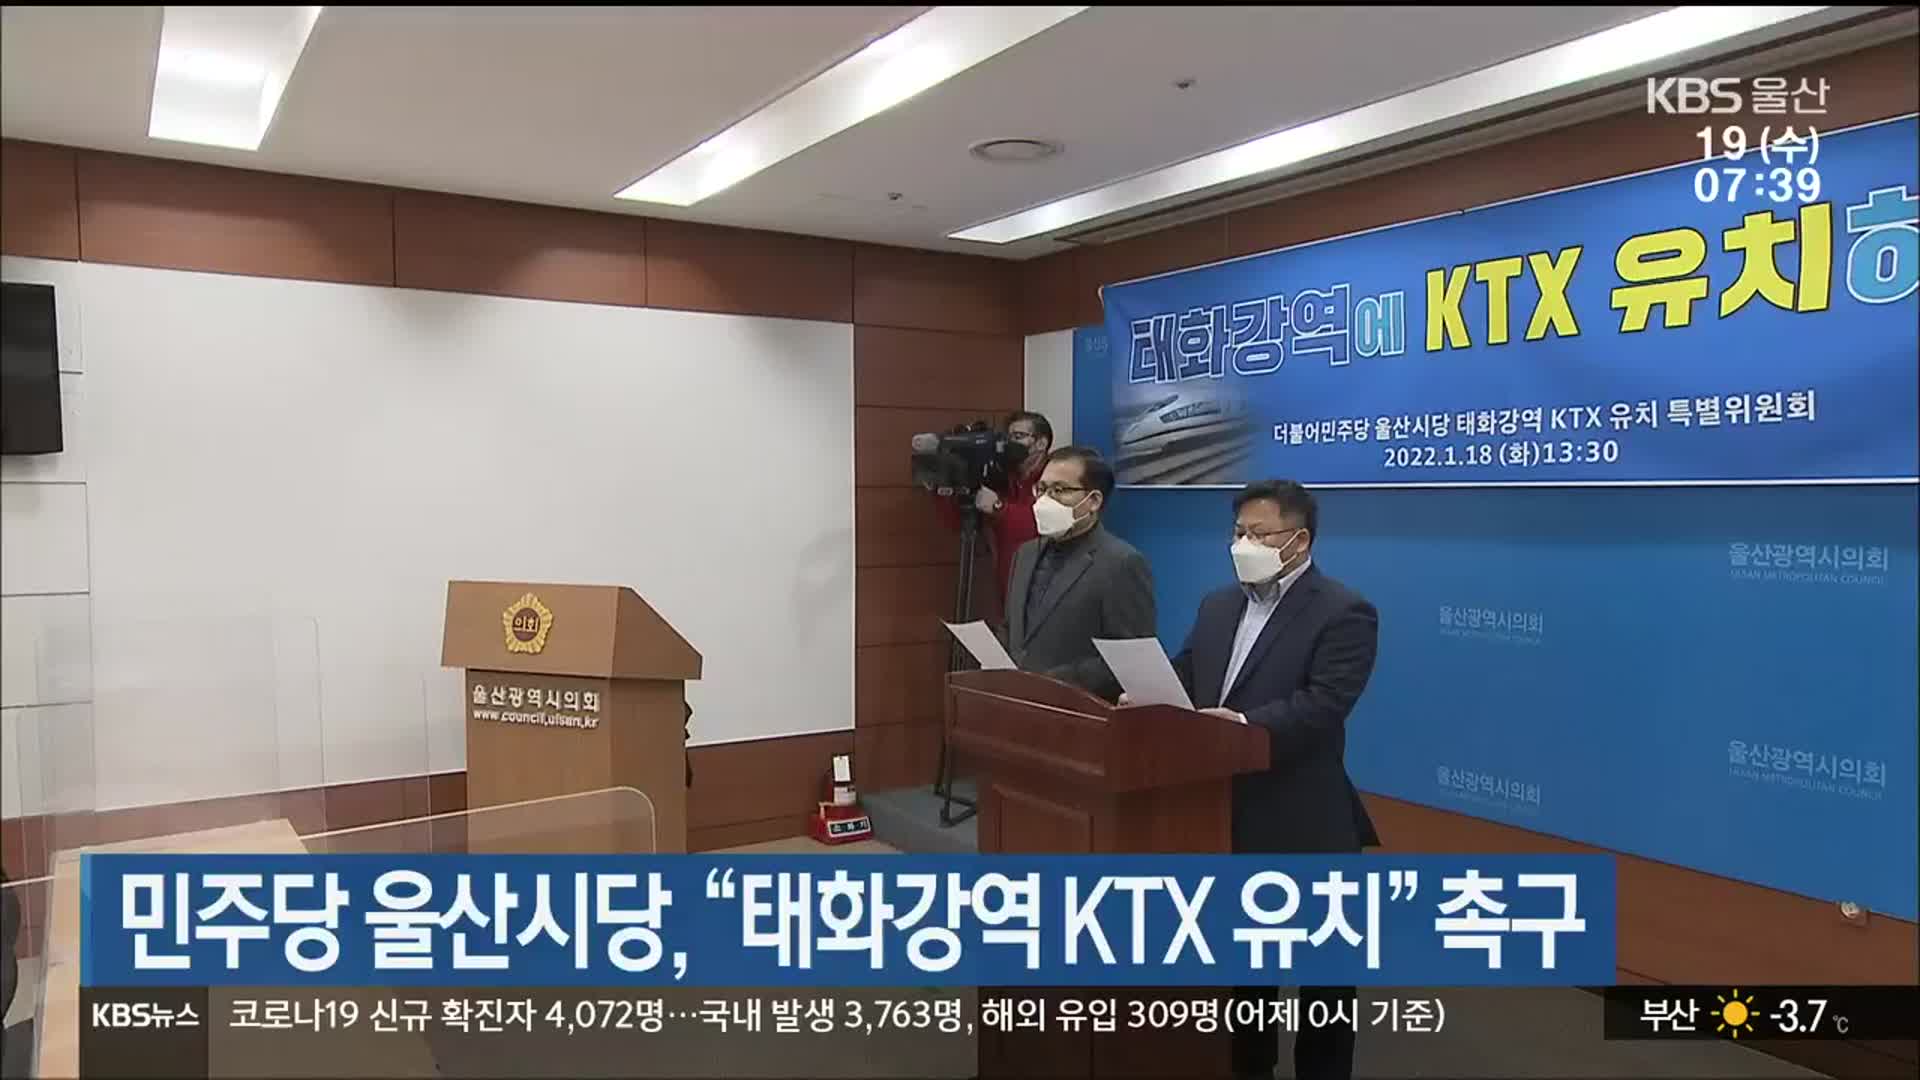 민주당 울산시당, “태화강역 KTX 유치” 촉구